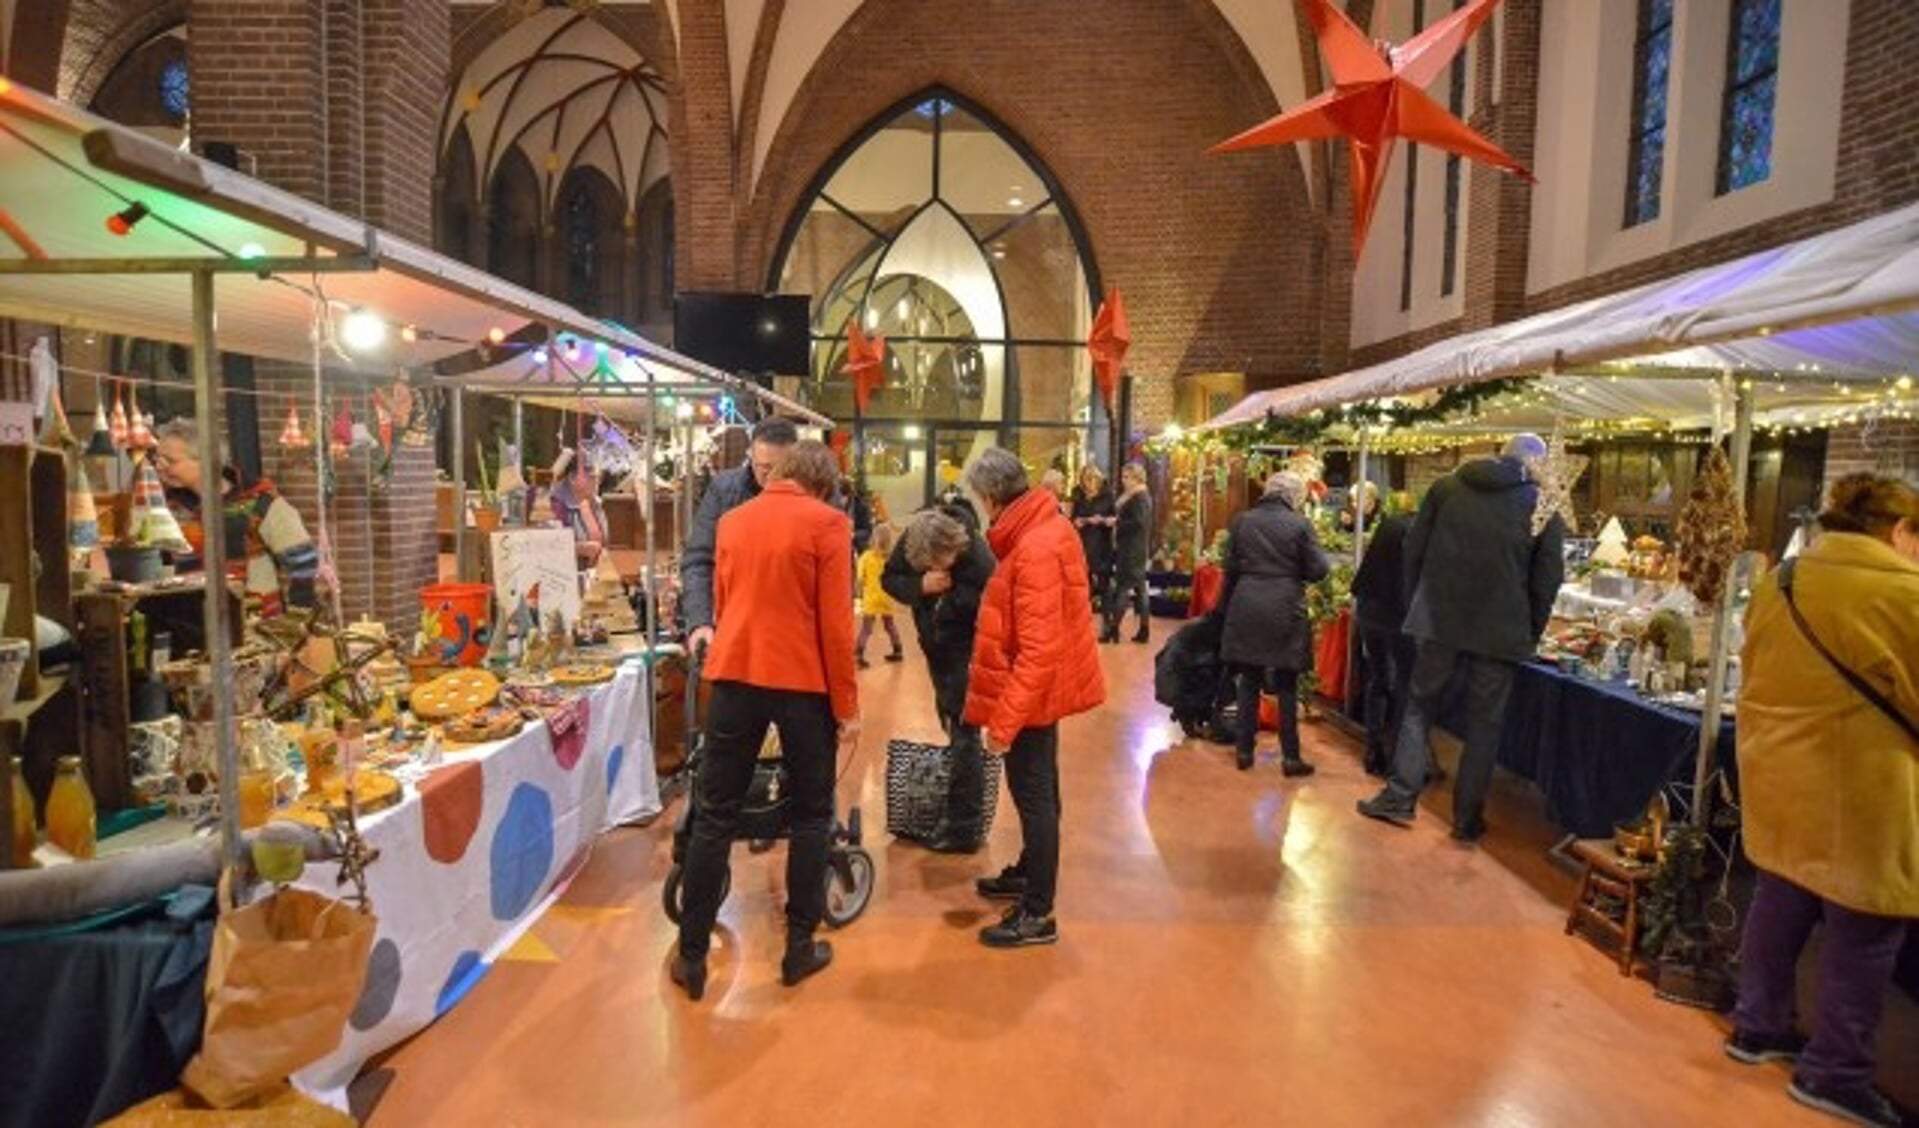 Kerstmarkt in de R.K. Kerk van Johannes de Doper. Kraampjes met verschillende creatieve gebruiksvoorwerpen, kerstartikelen, kerststukjes, maar ook koffie en erwtensoep. (Foto: Paul van den Dungen) 